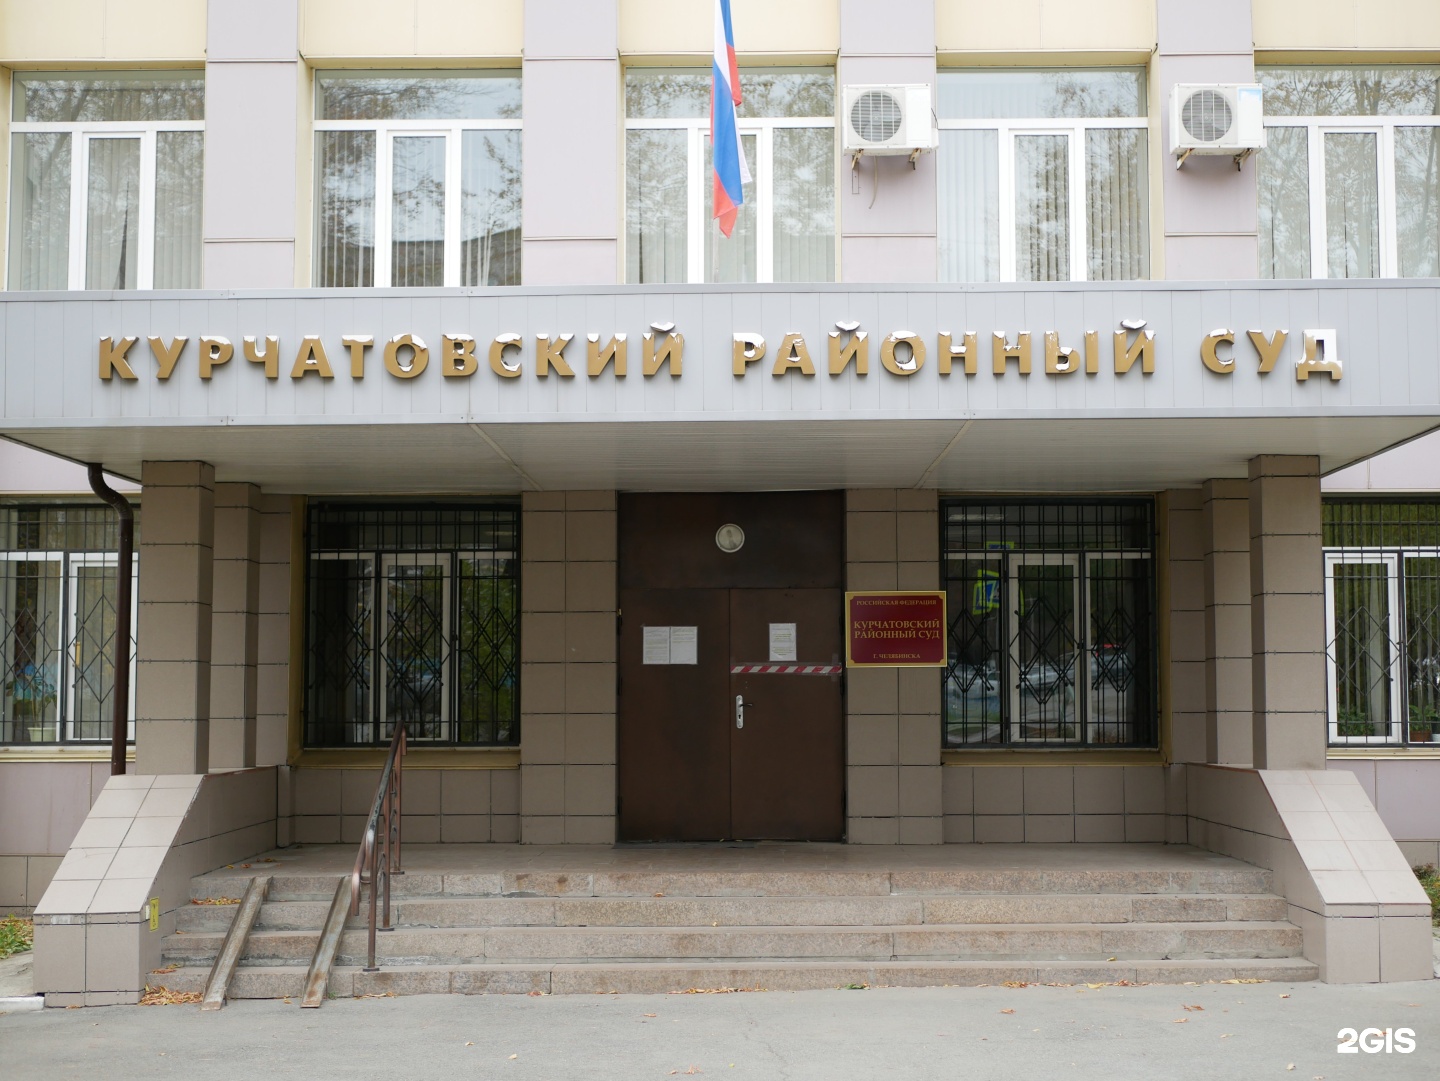 Суд Курчатовского района